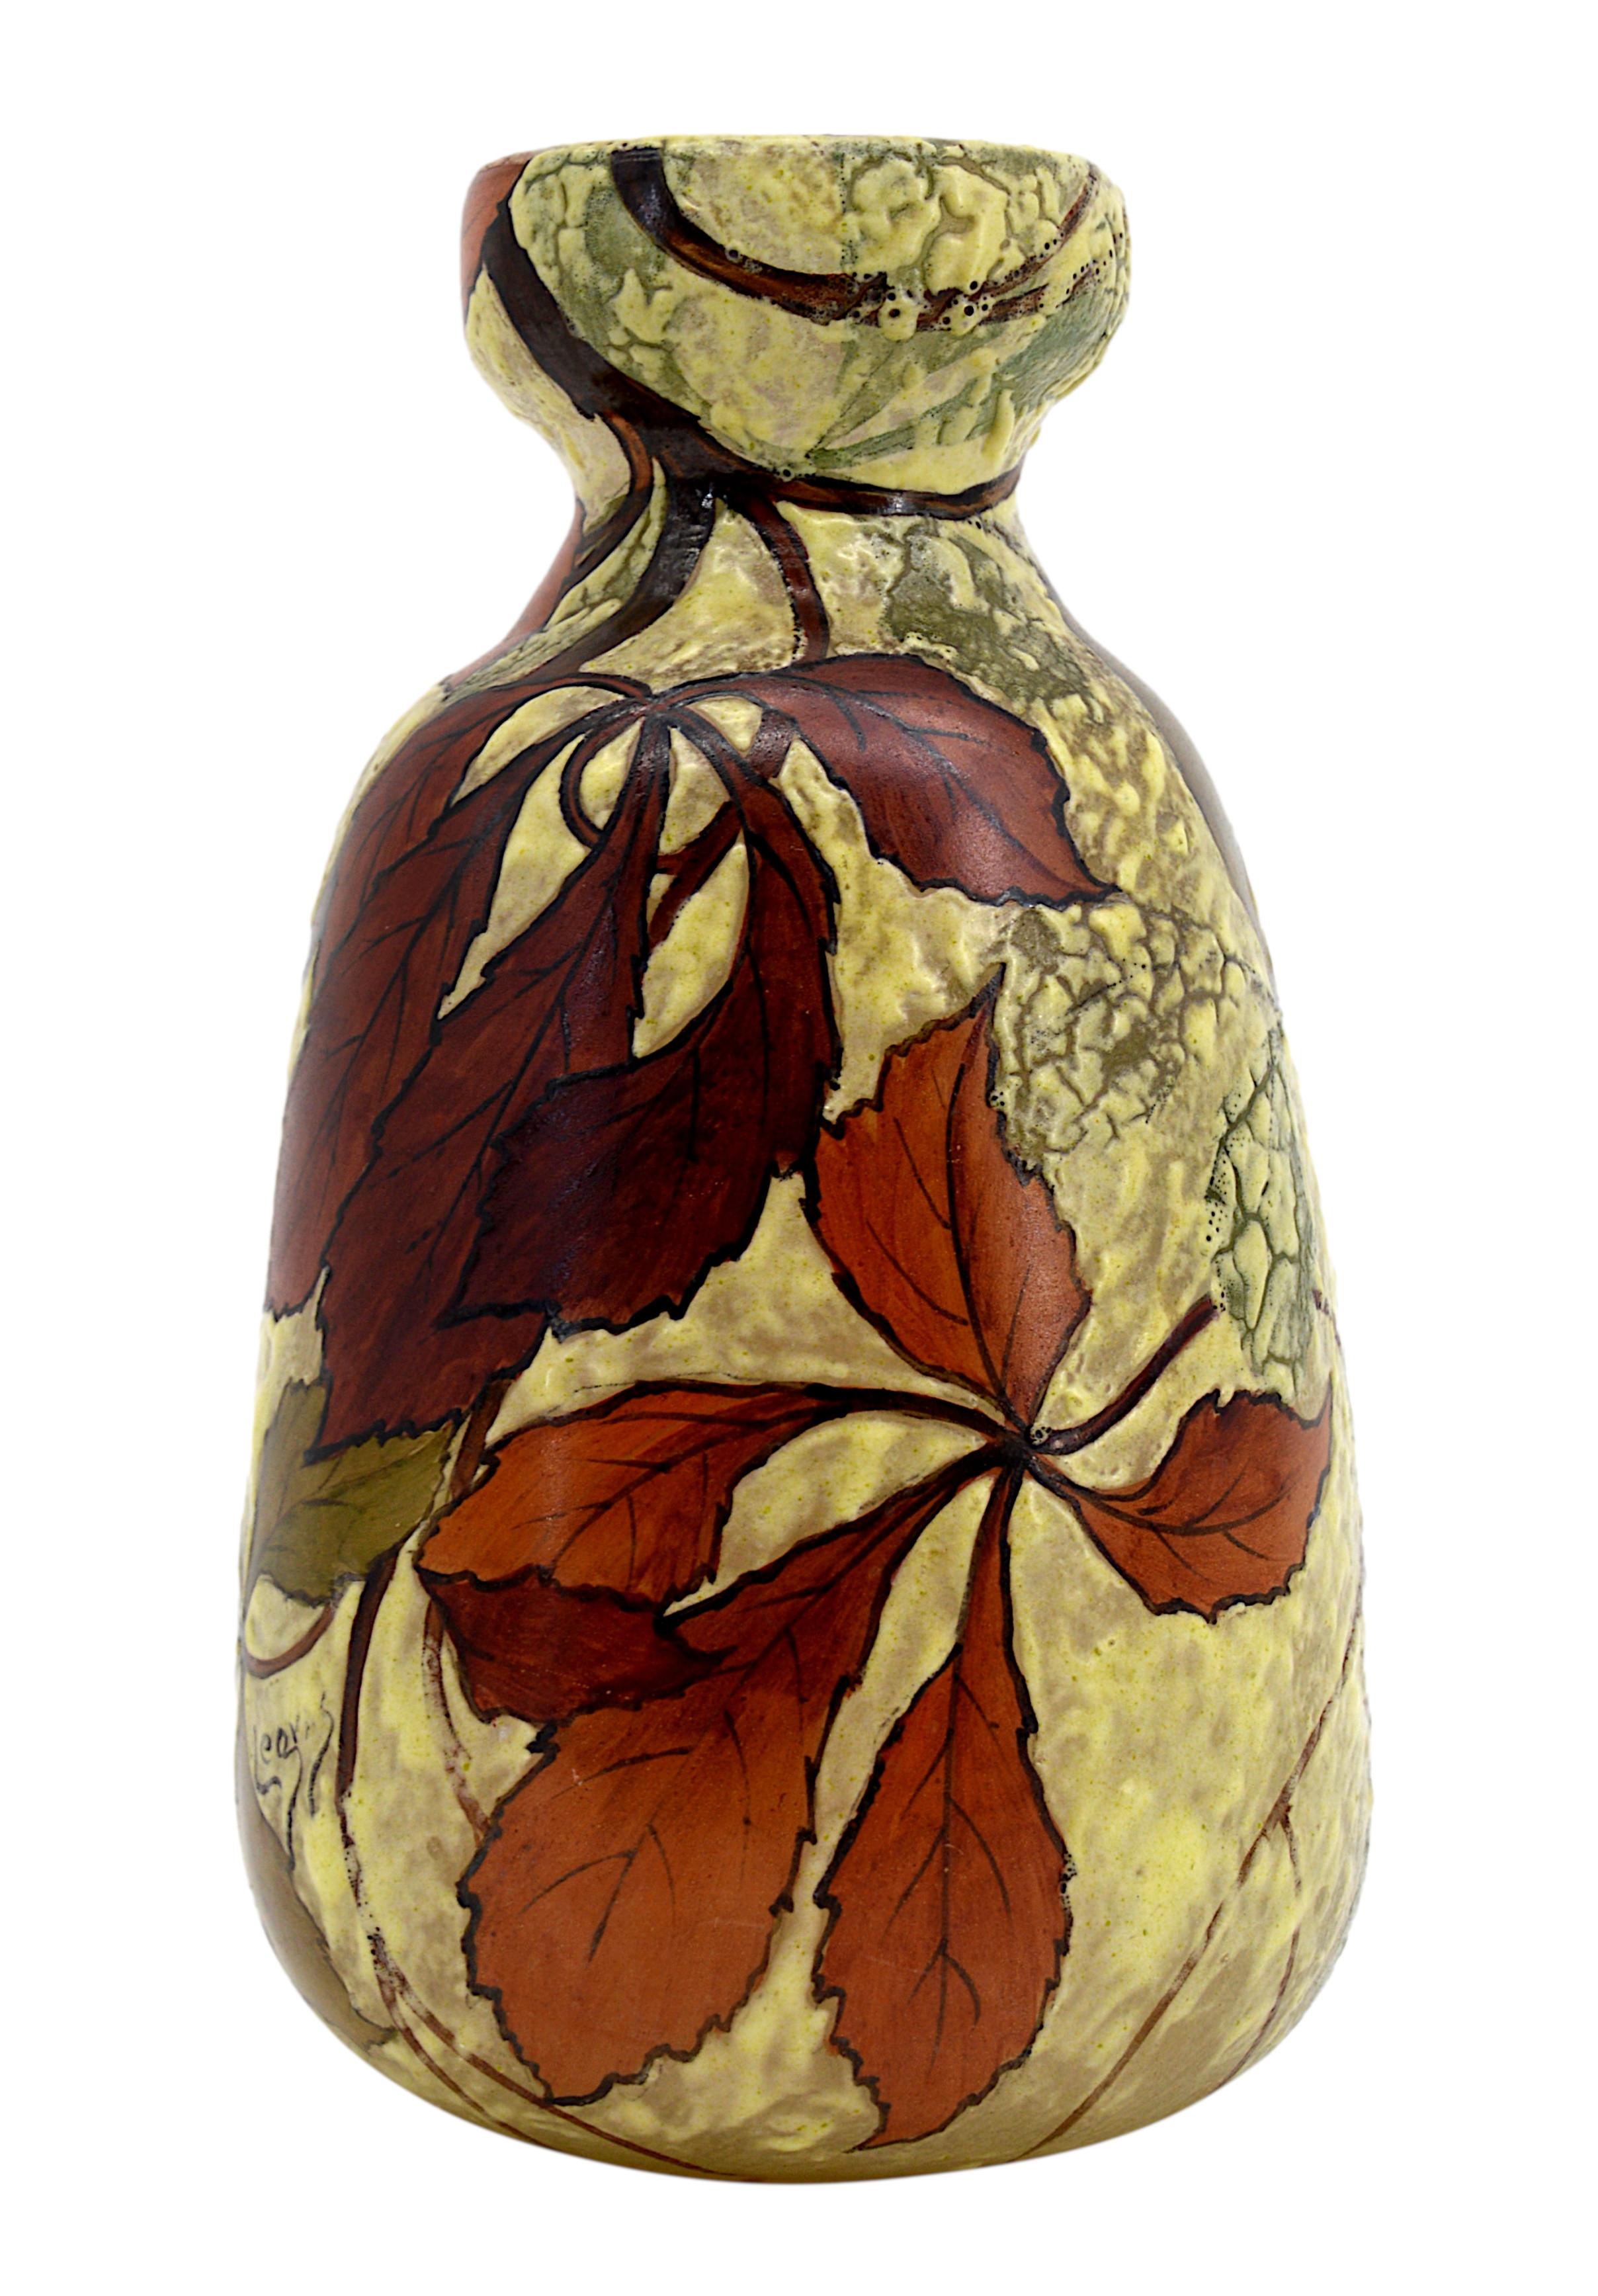 Seltene französische Jugendstilvase von François-Théodore Legras, Frankreich, frühe 1900er Jahre. Sehr seltene Vase mit einer ungewöhnlichen Form und einem reich mit Kastanienblättern emaillierten Dekor. Ein Muss für Sammler! Maße: Höhe: 19,5 cm